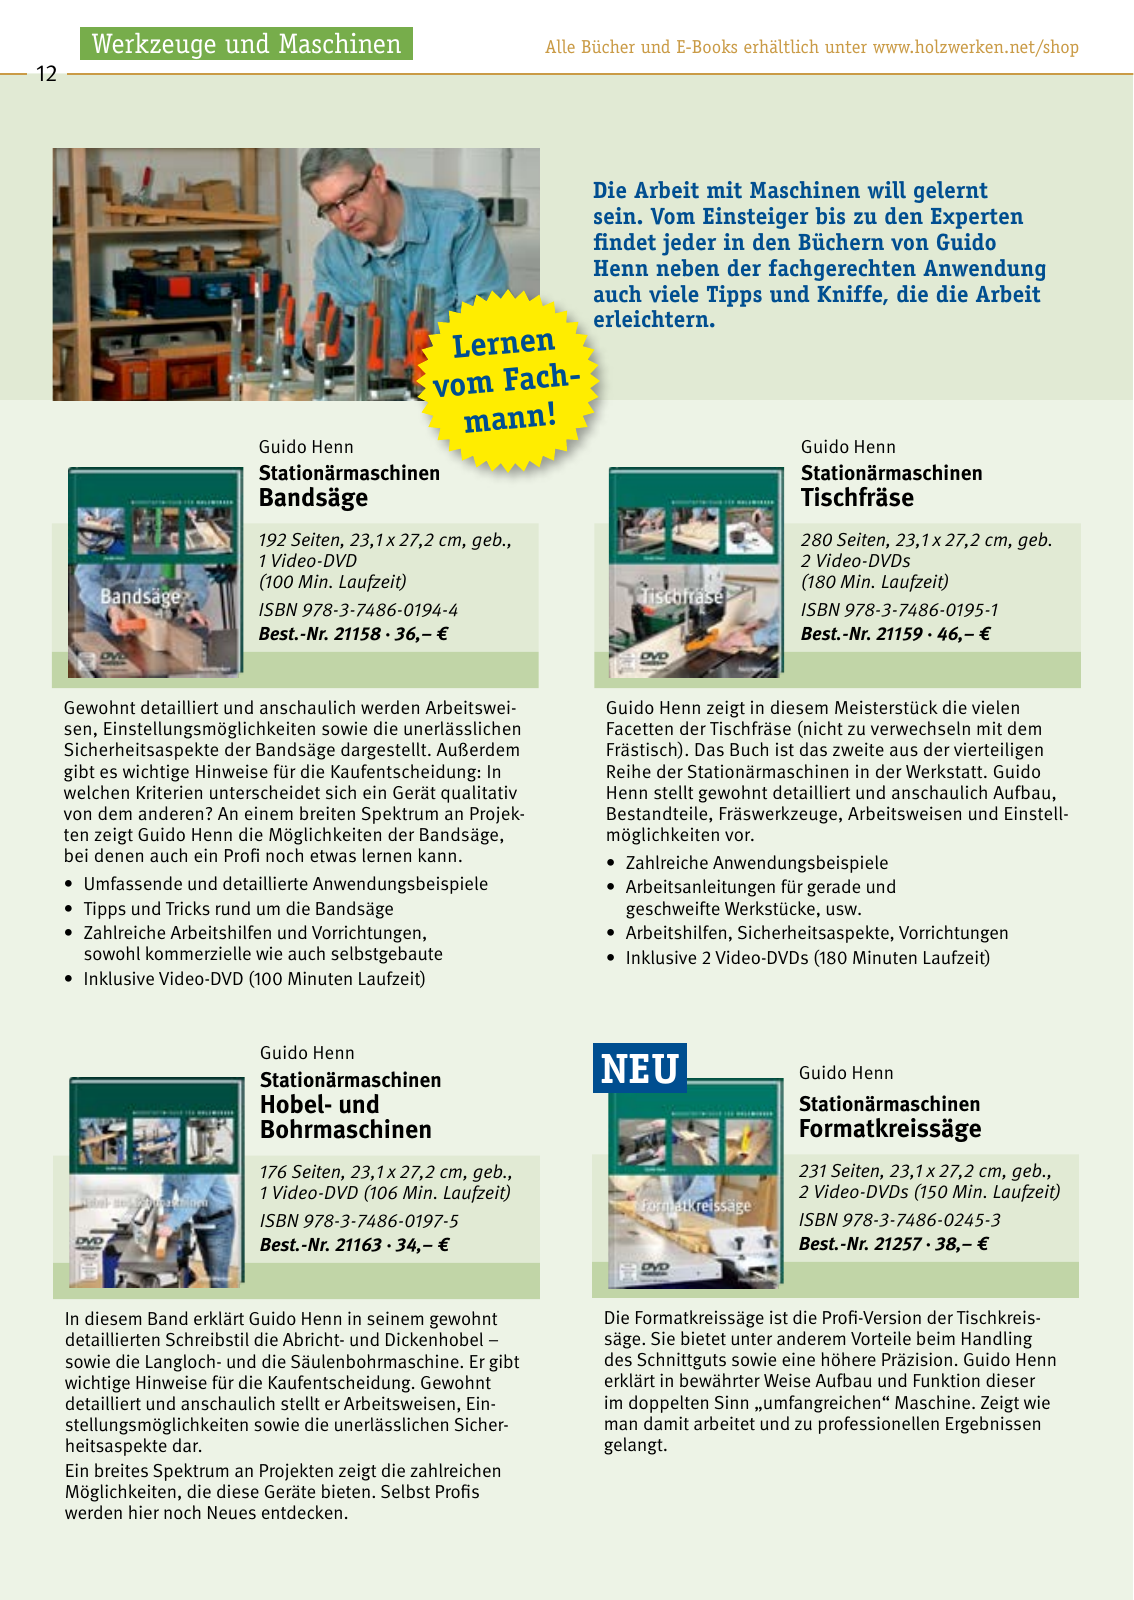 Vorschau HolzWerken Katalog 2021 Seite 12